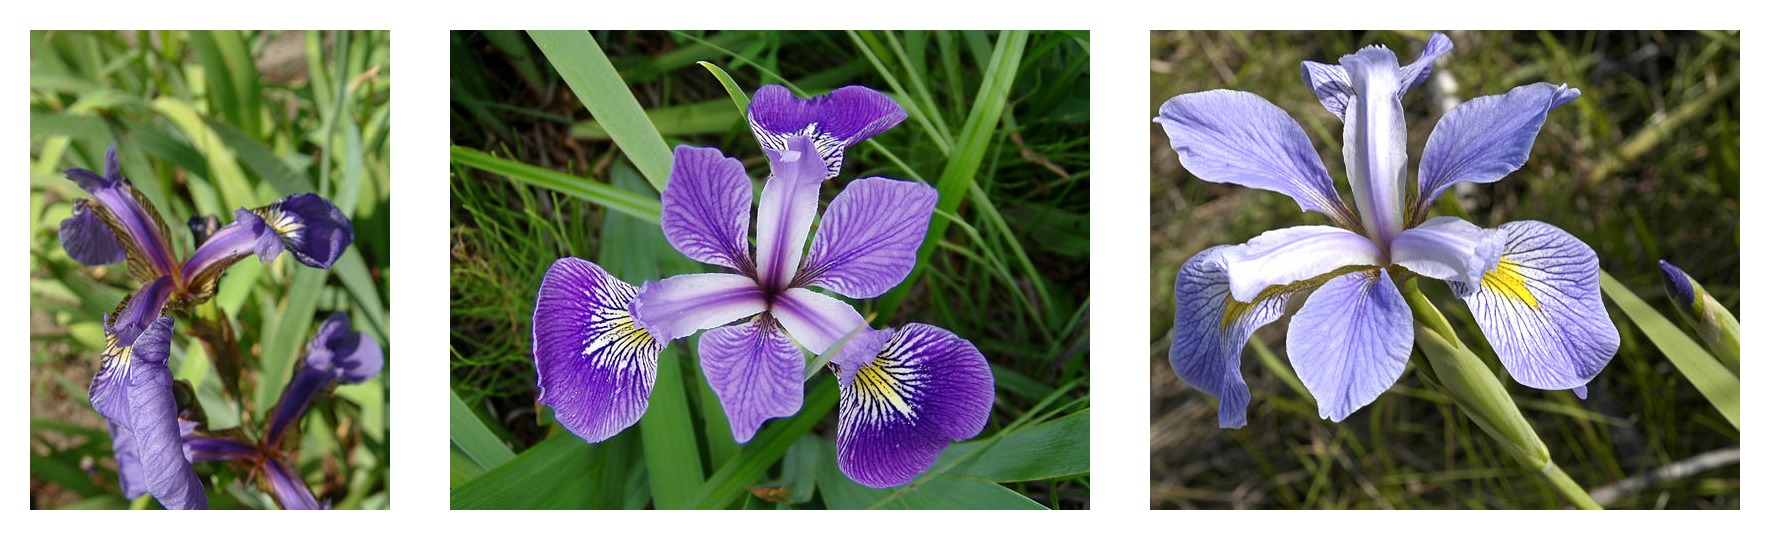 Geometria das pétalas comparada para três espécies de íris: Iris setosa, Iris virginica e Iris versicolor